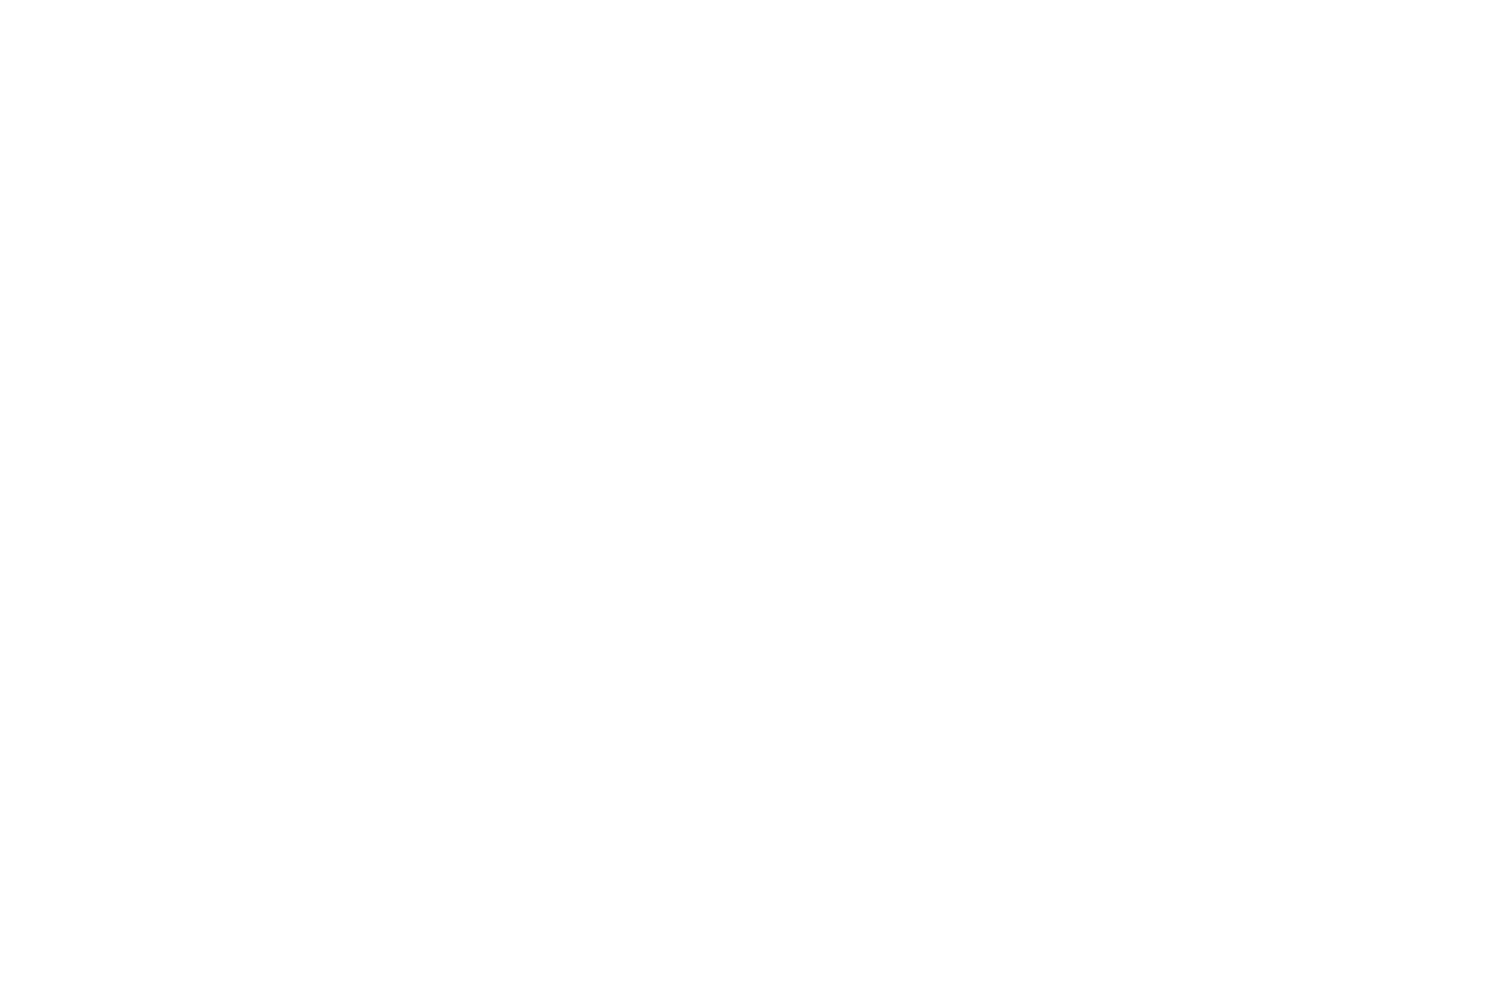 Imam Ghazali Institute